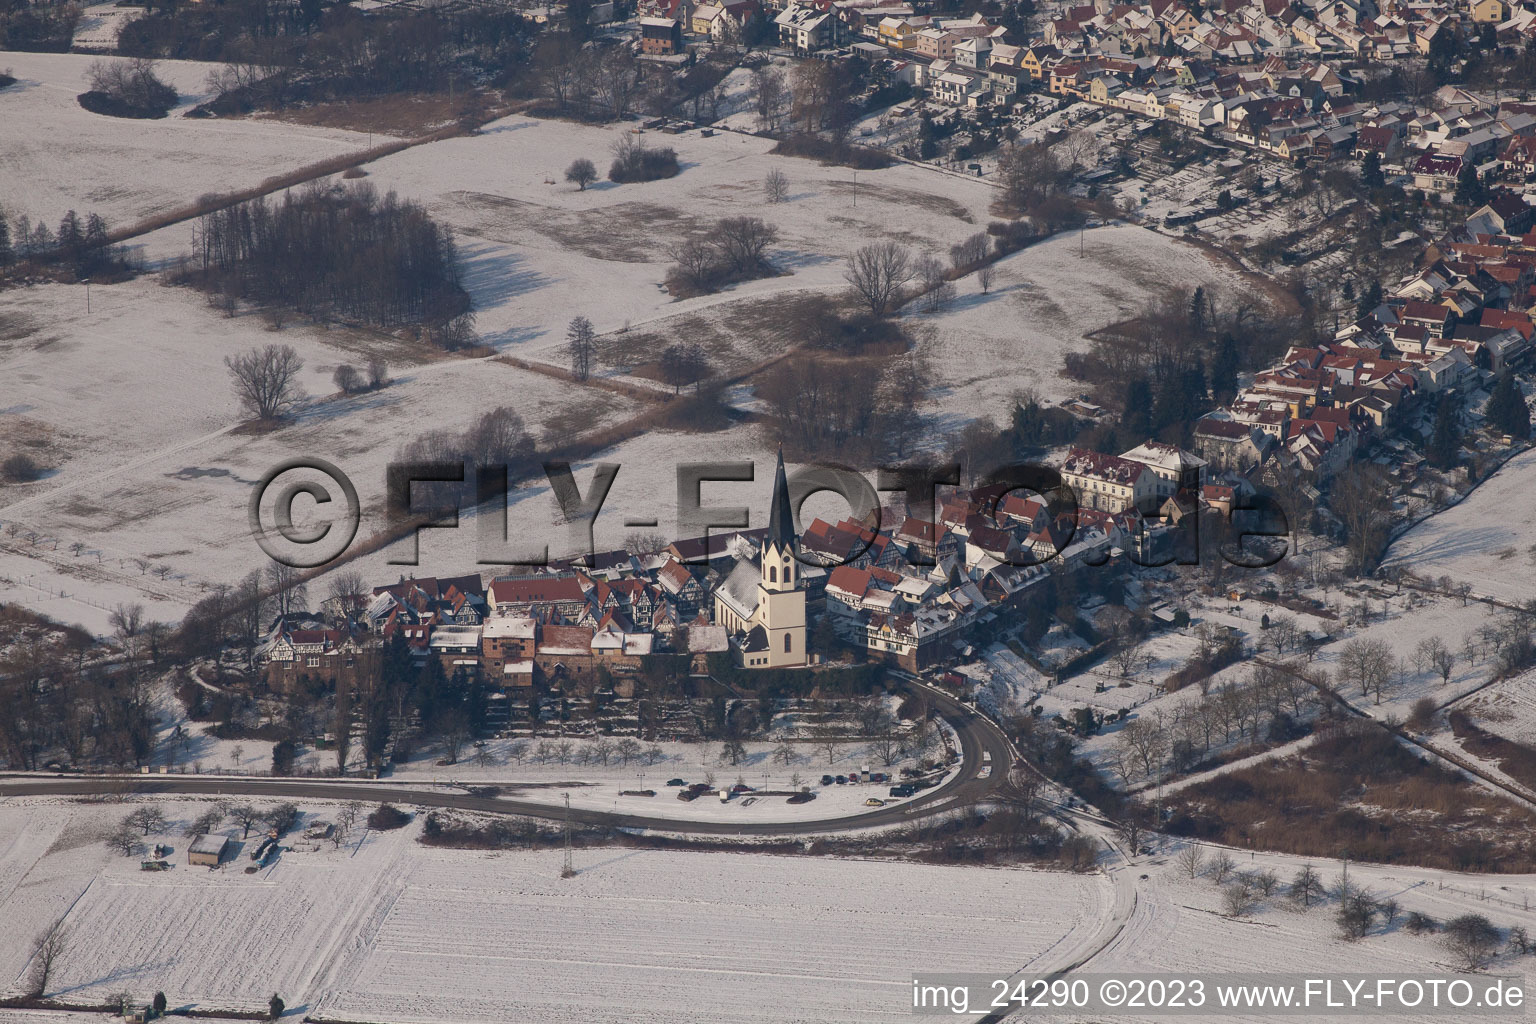 Jockgrim im Bundesland Rheinland-Pfalz, Deutschland aus der Luft betrachtet